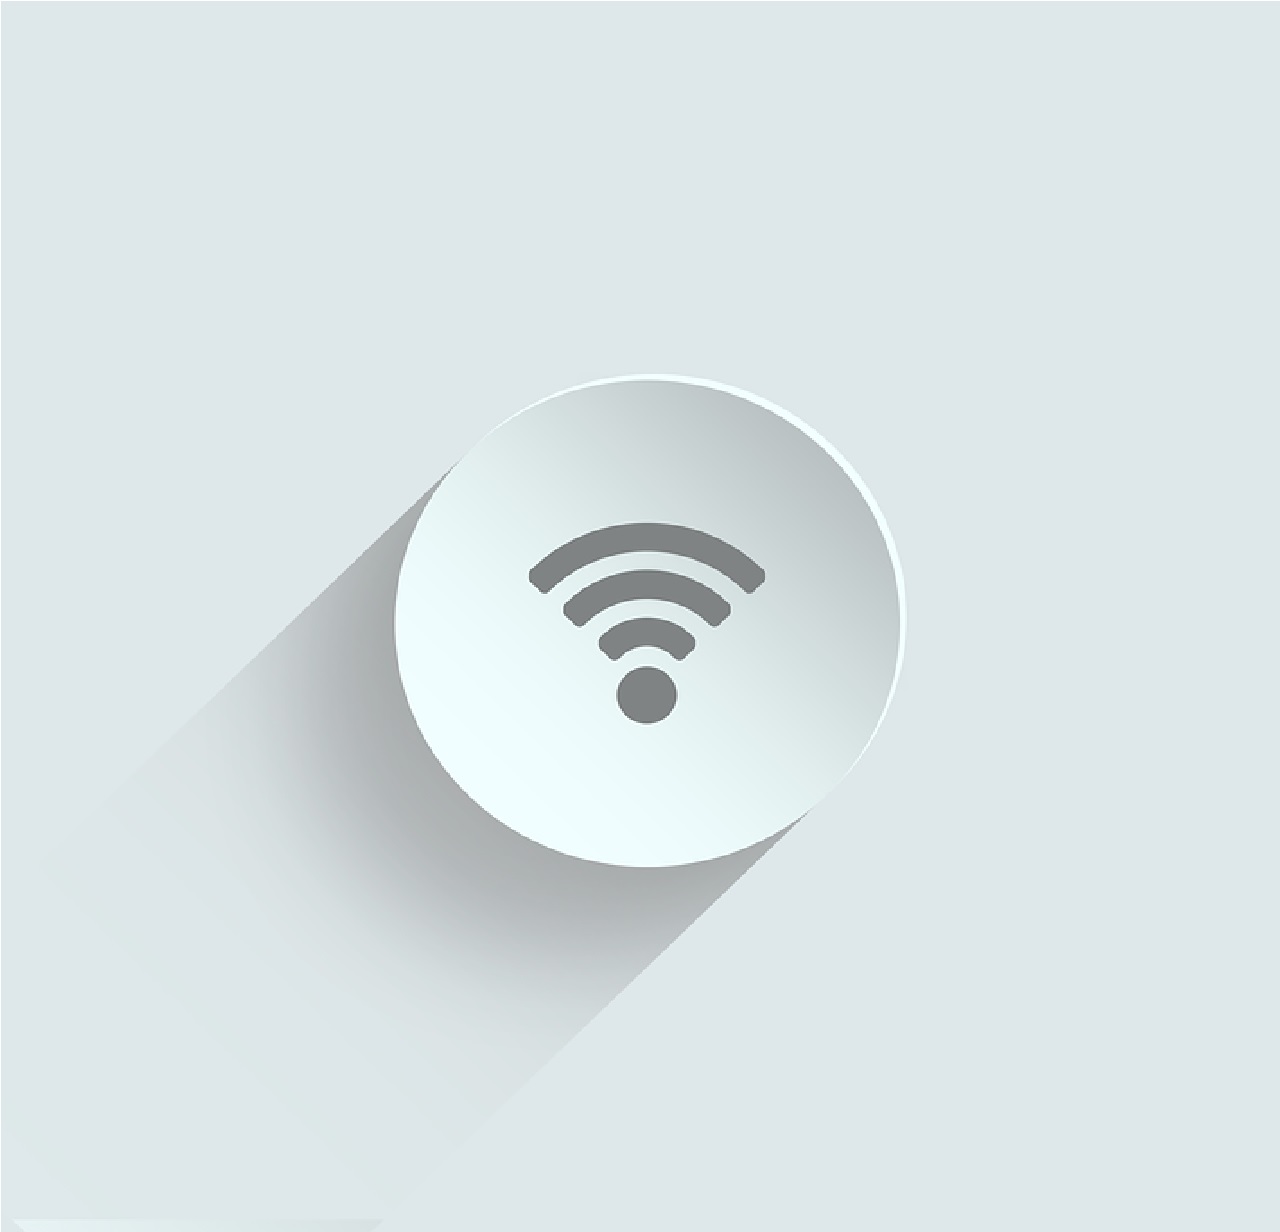 Cara Memutuskan Koneksi Wifi Orang Lain Dengan Pc. 2 Cara Memutus Koneksi WiFi Orang Lain